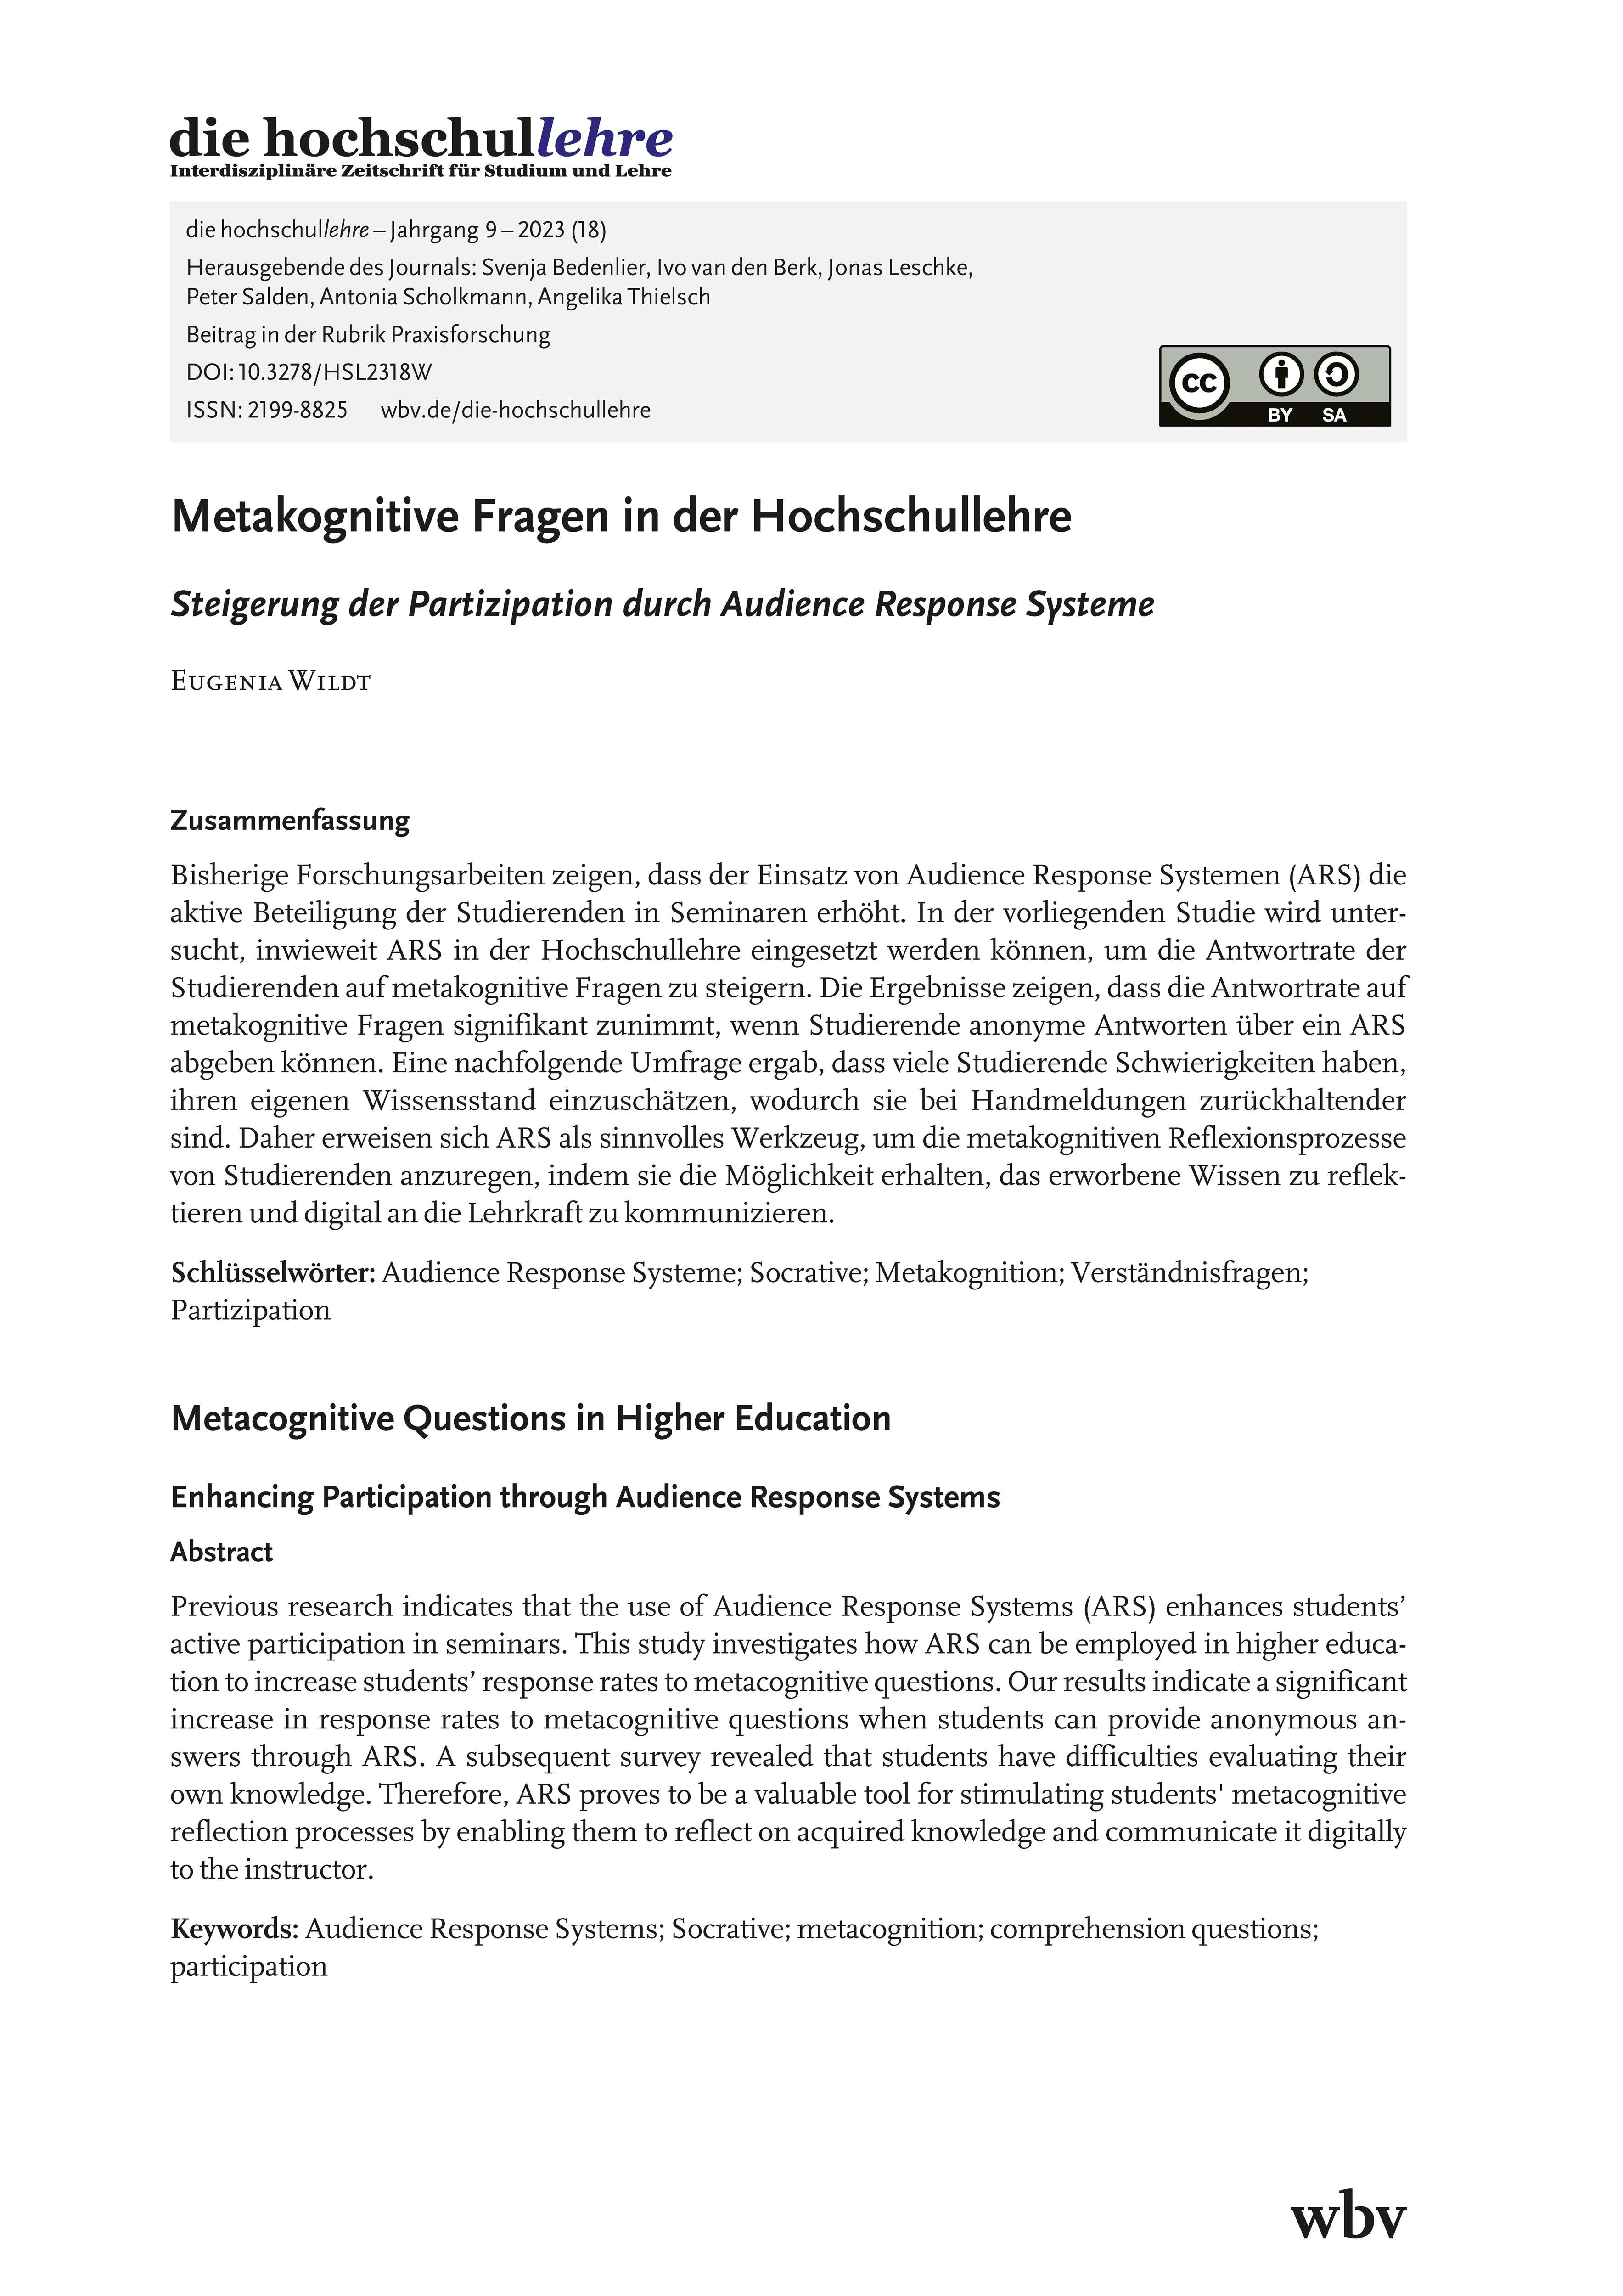 Metakognitive Fragen in der Hochschullehre. Steigerung der Partizipation durch Audience Response Systeme